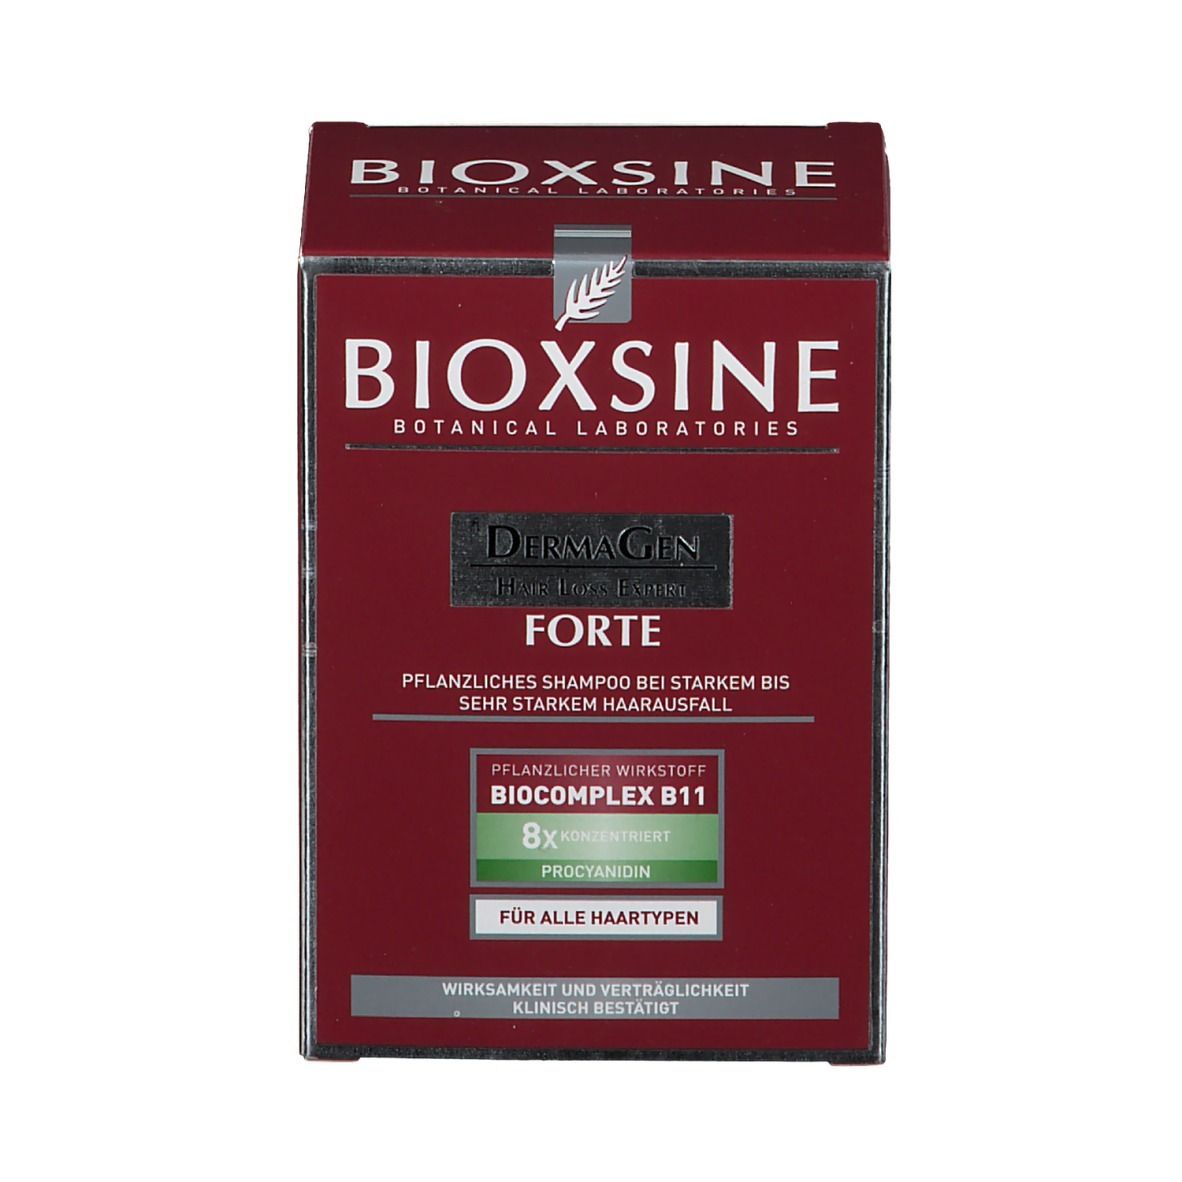 BIOXSINE Forte Shampoo Mini